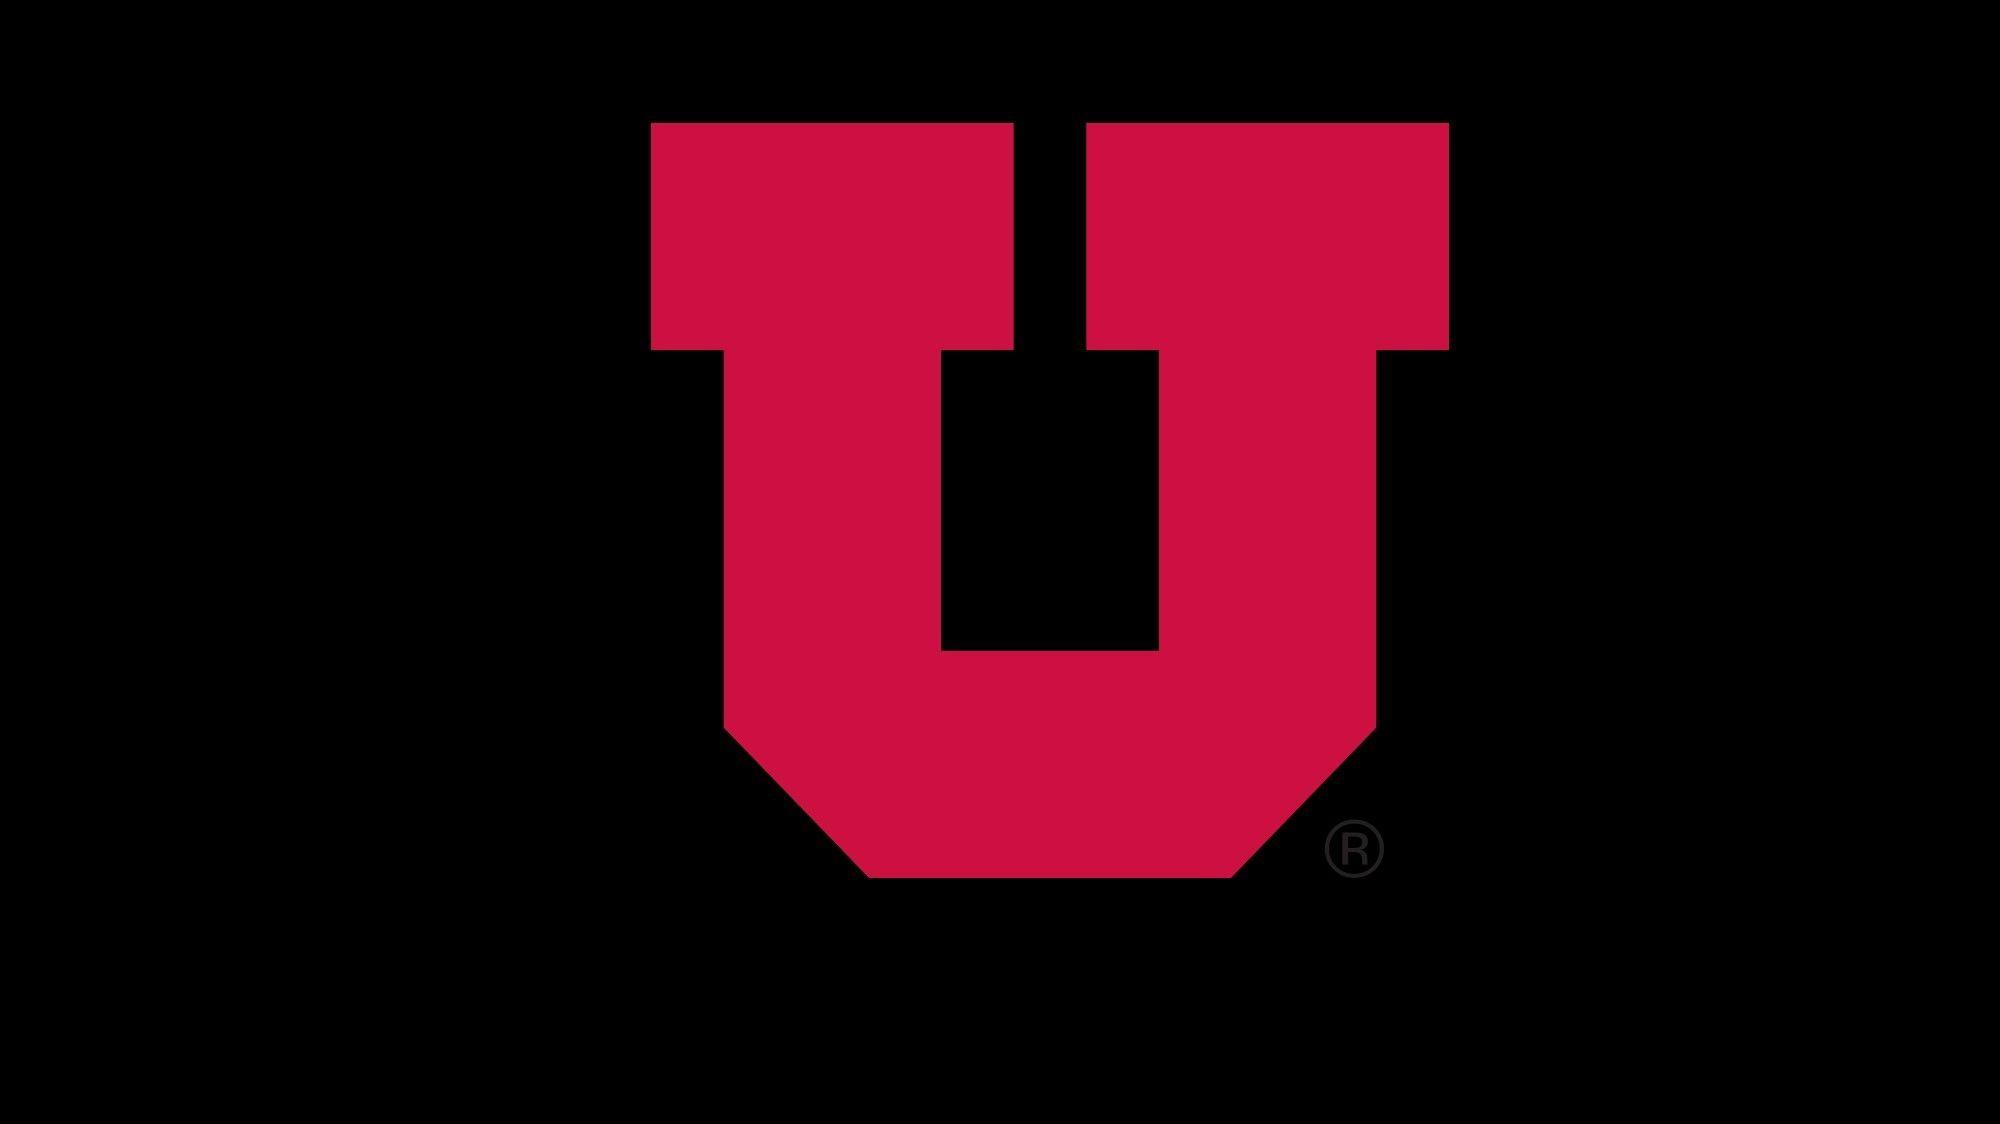 UtahUtes.com. University of Utah Athletics